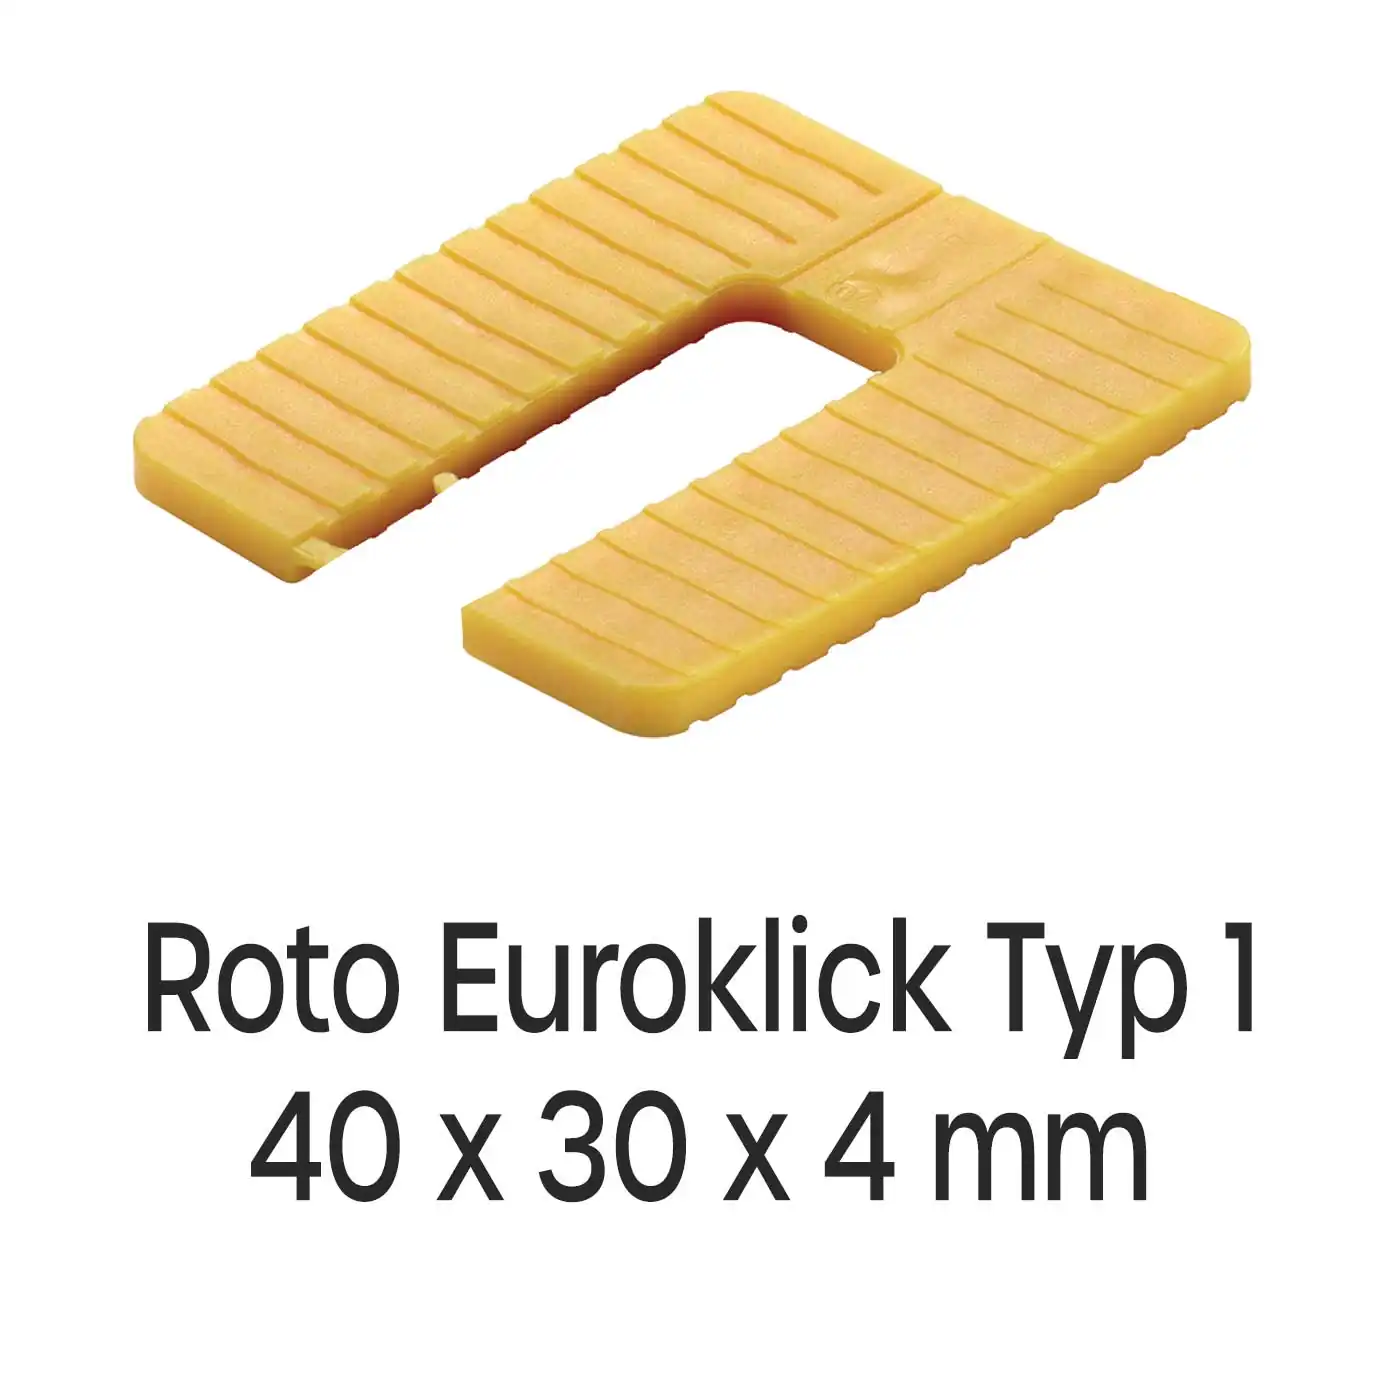 Distanzplatten Roto Euroklick Typ 1 40 x 30 x 4 mm 1000 Stück